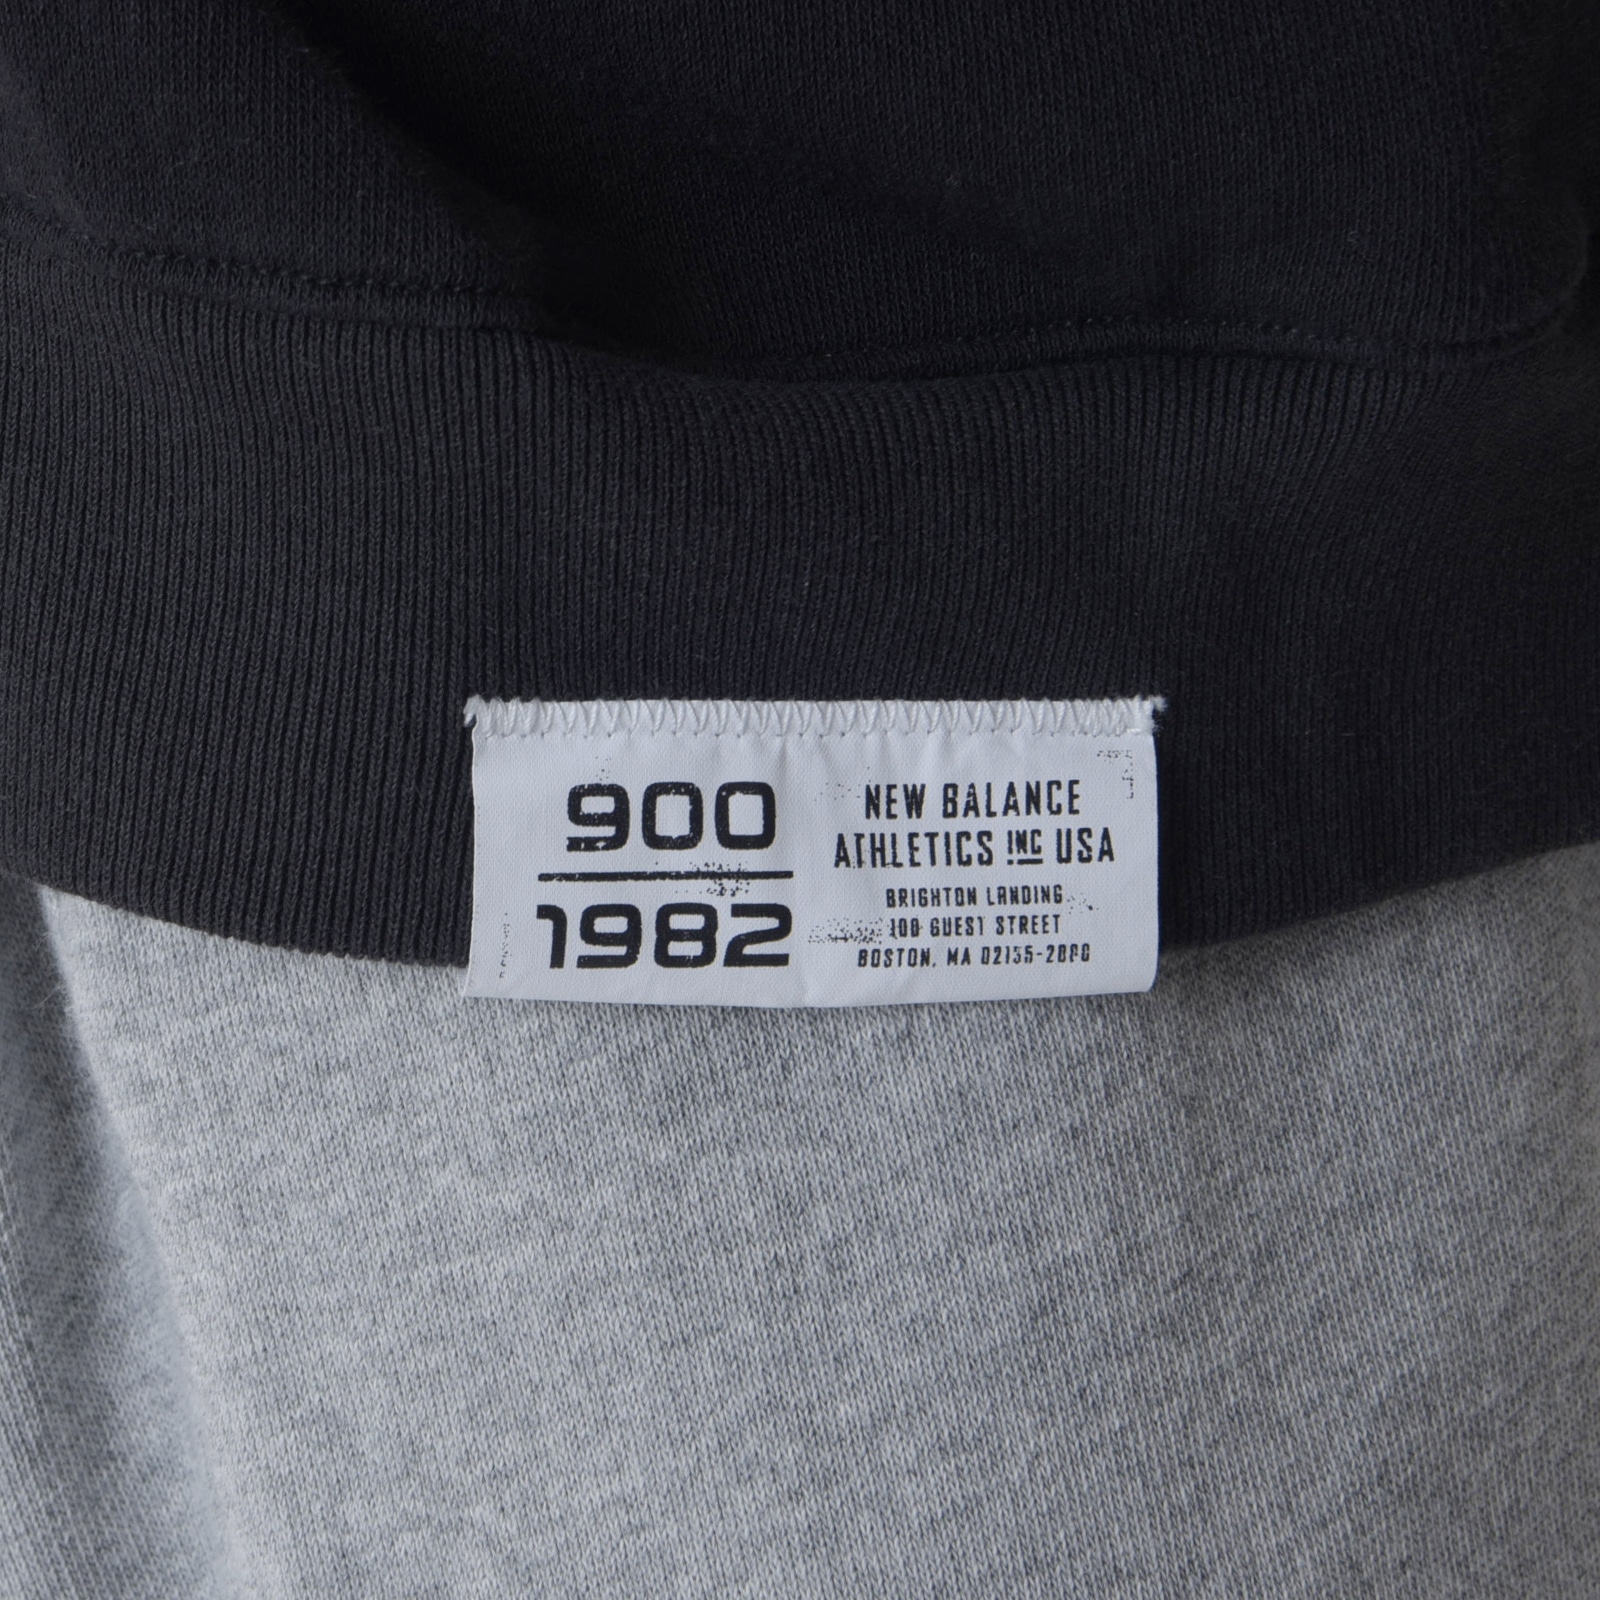 900 프렌치 테리바 - 시티 재킷